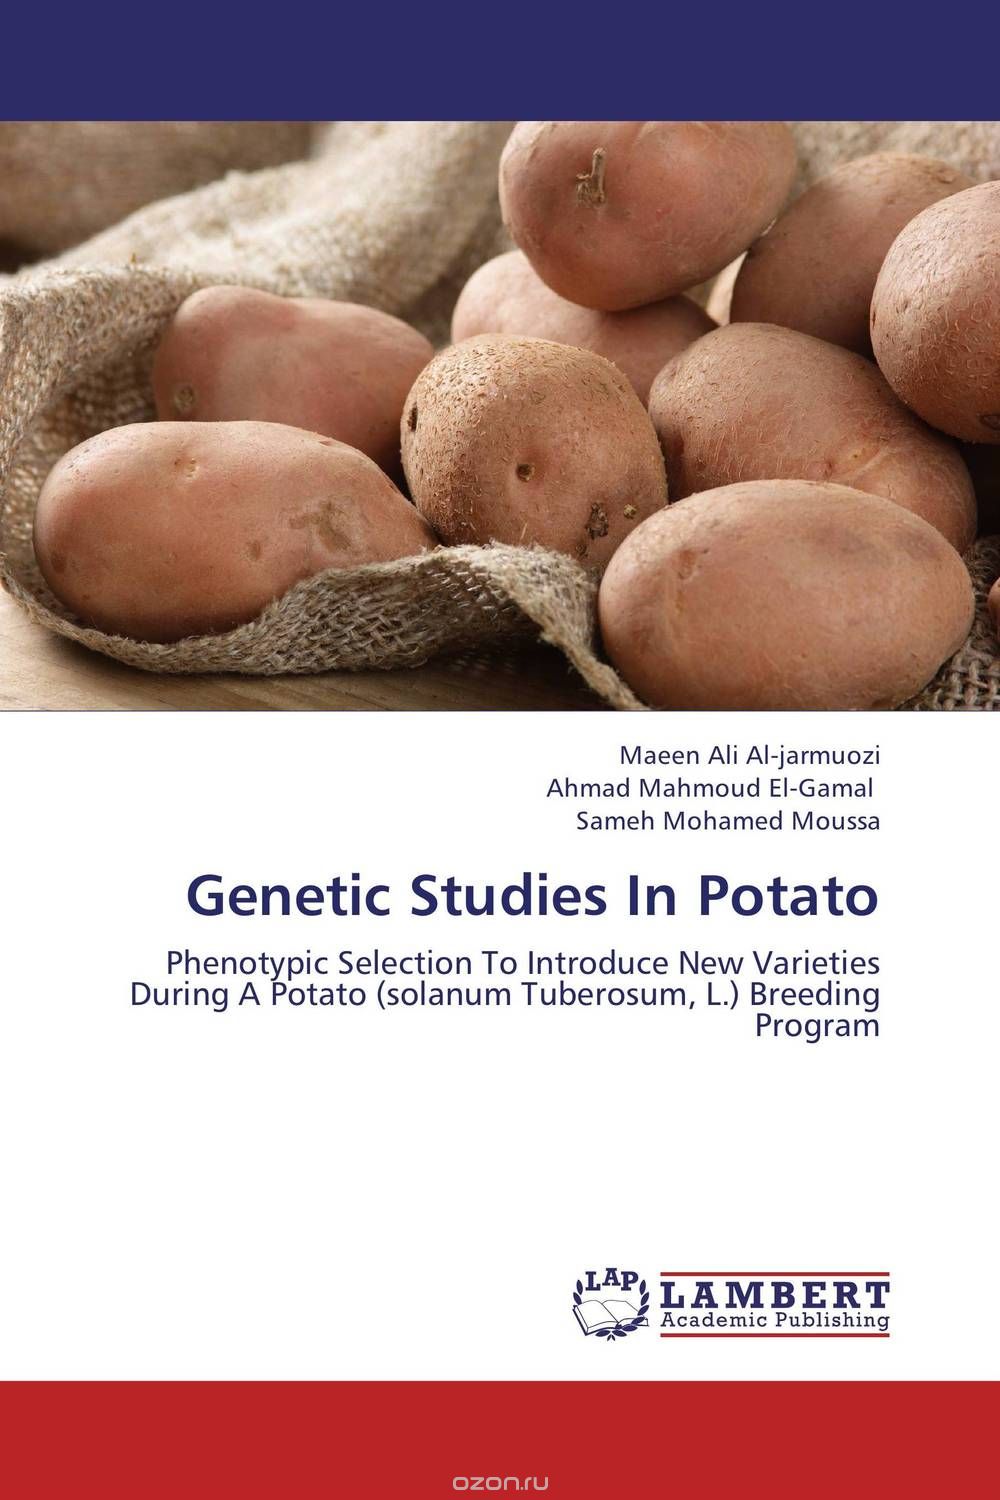 Скачать книгу "Genetic Studies In Potato"